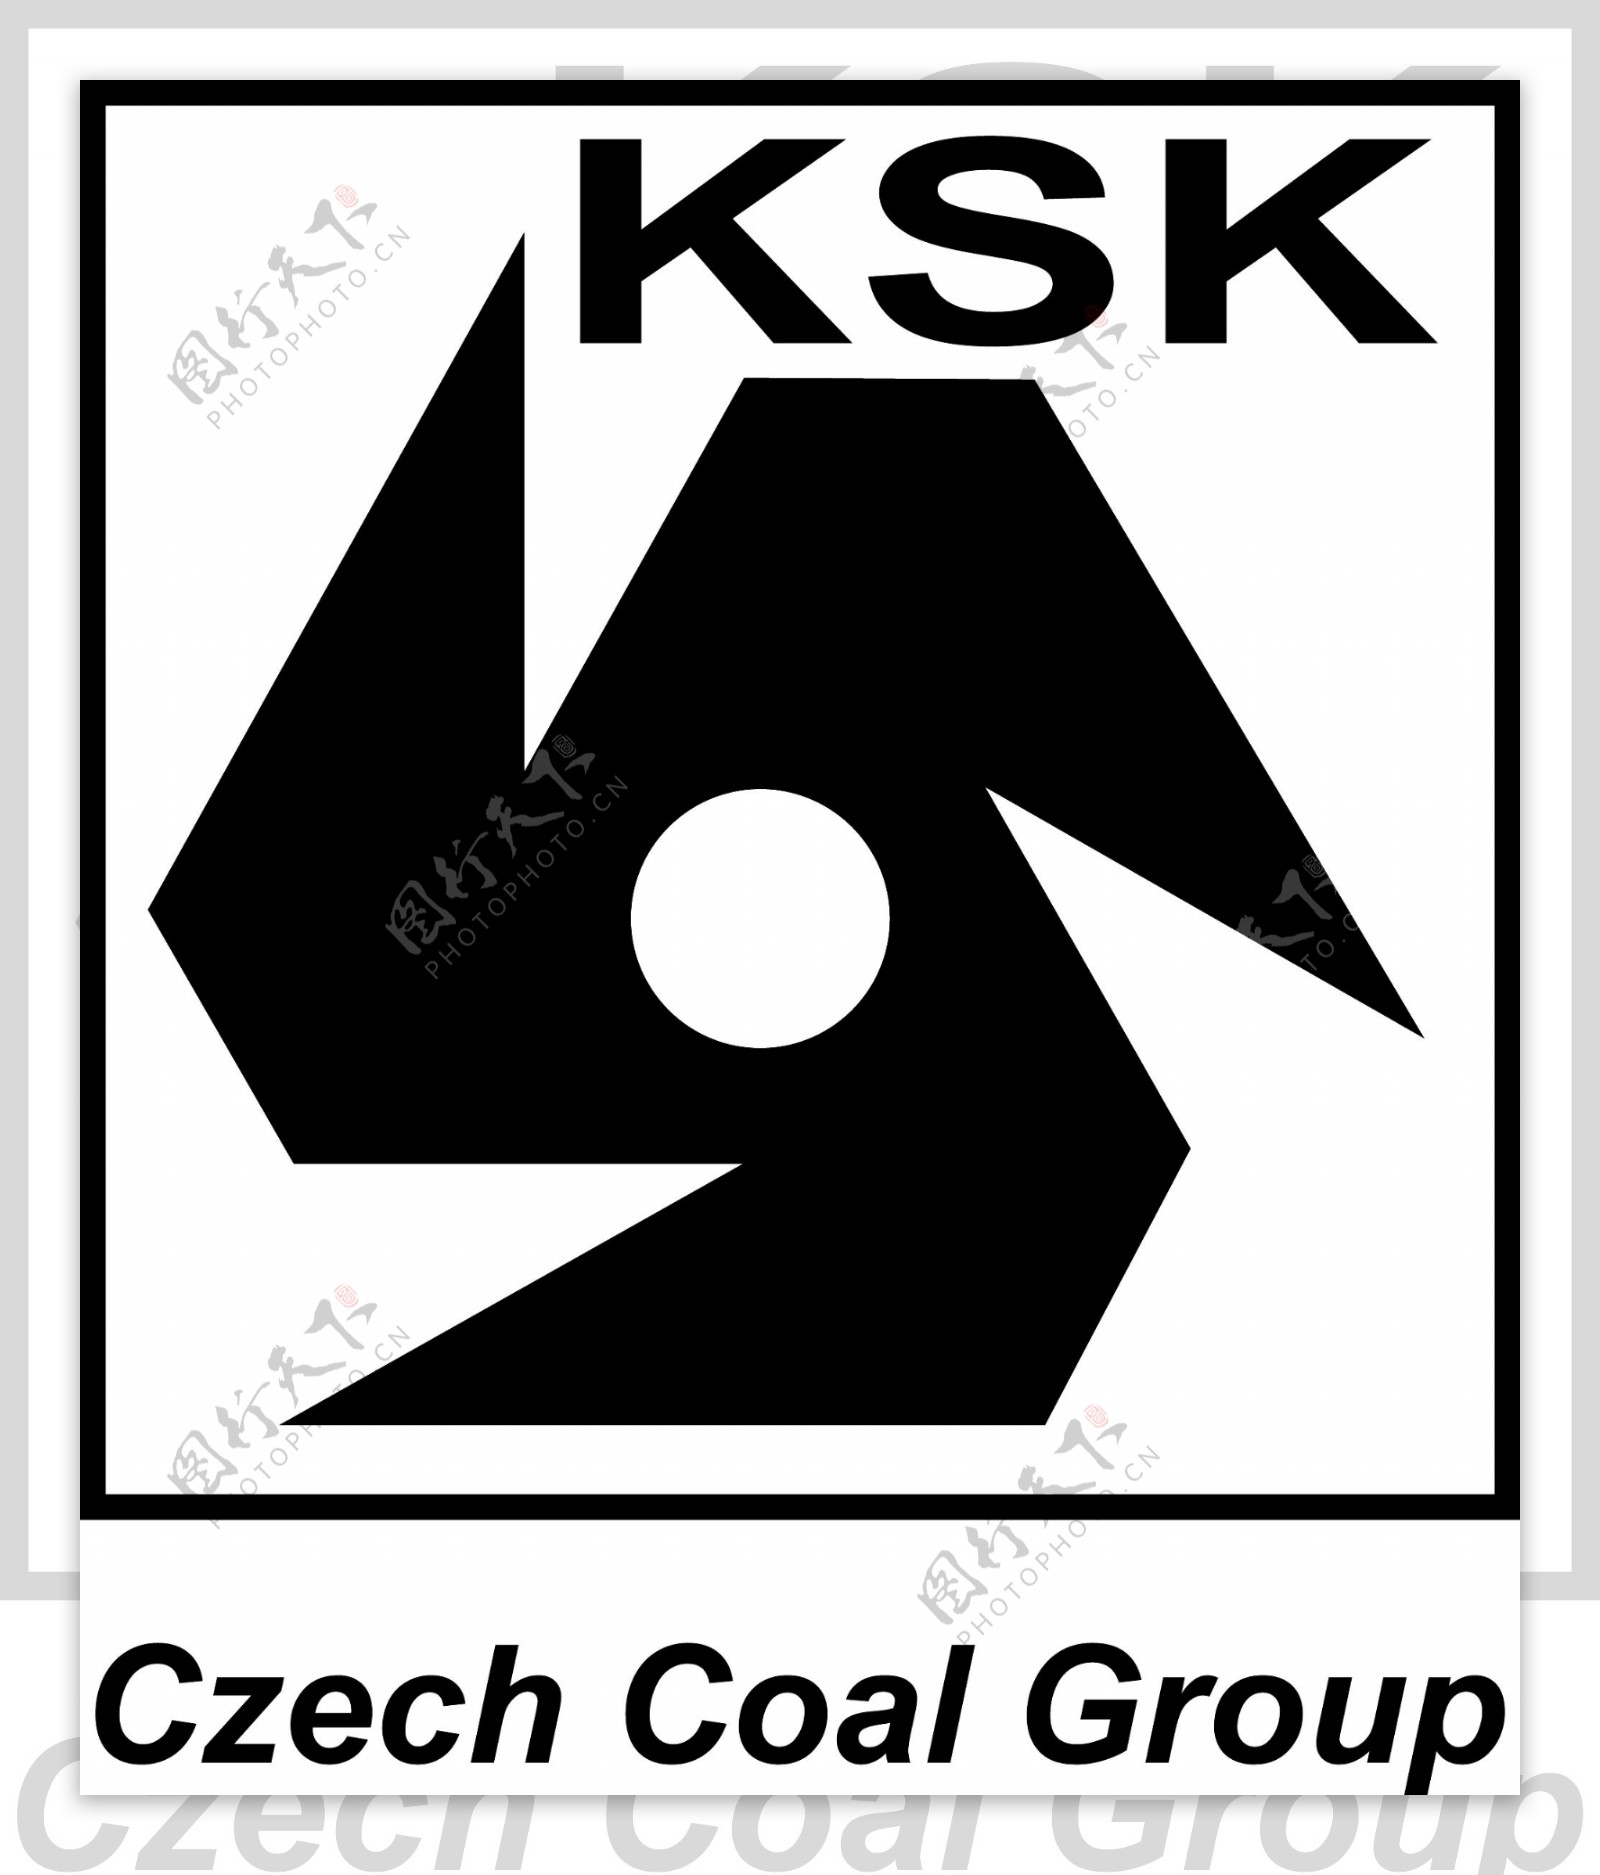 捷克煤炭集团